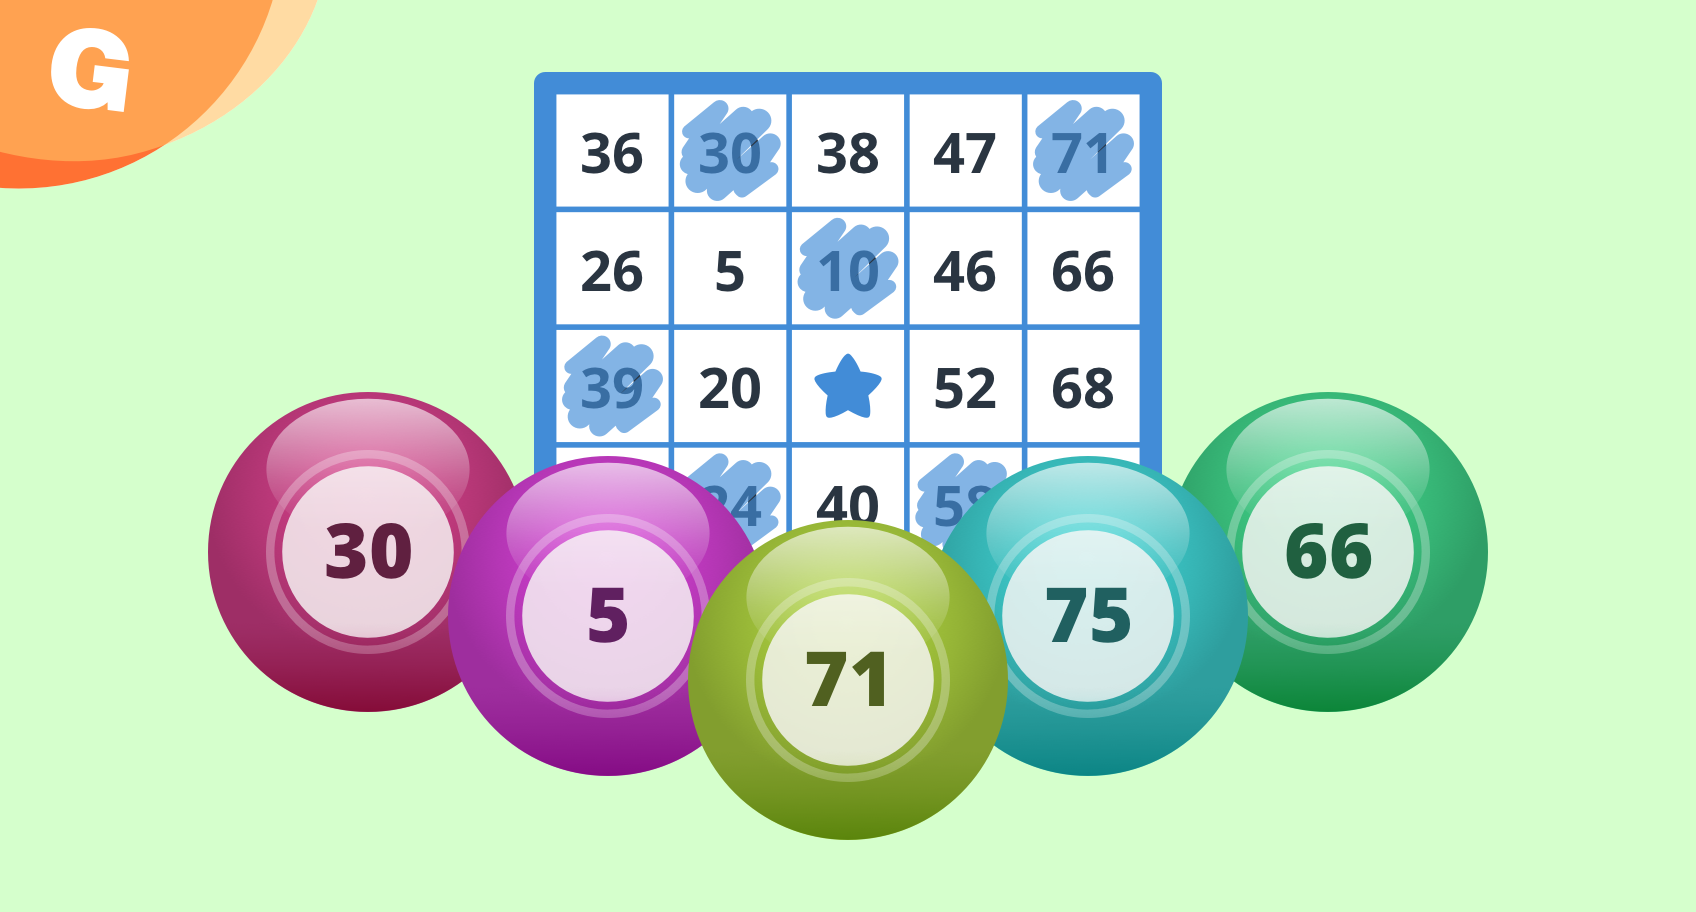 bingo caller random number generator for bingo